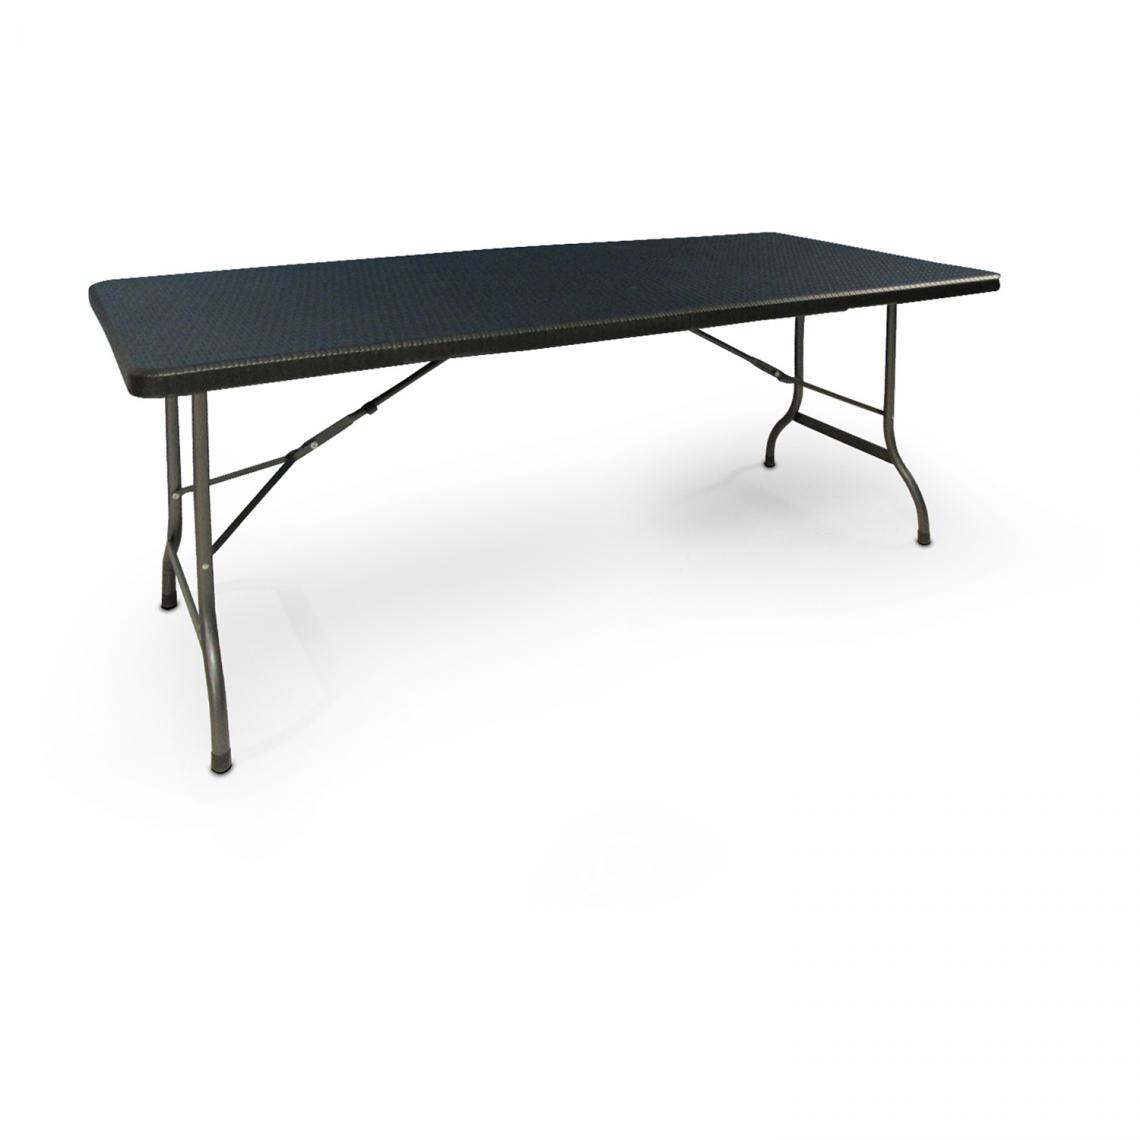 Alter - Table rectangulaire pliable, coloris noir, 180 x 75 x h74 cm - Tables à manger